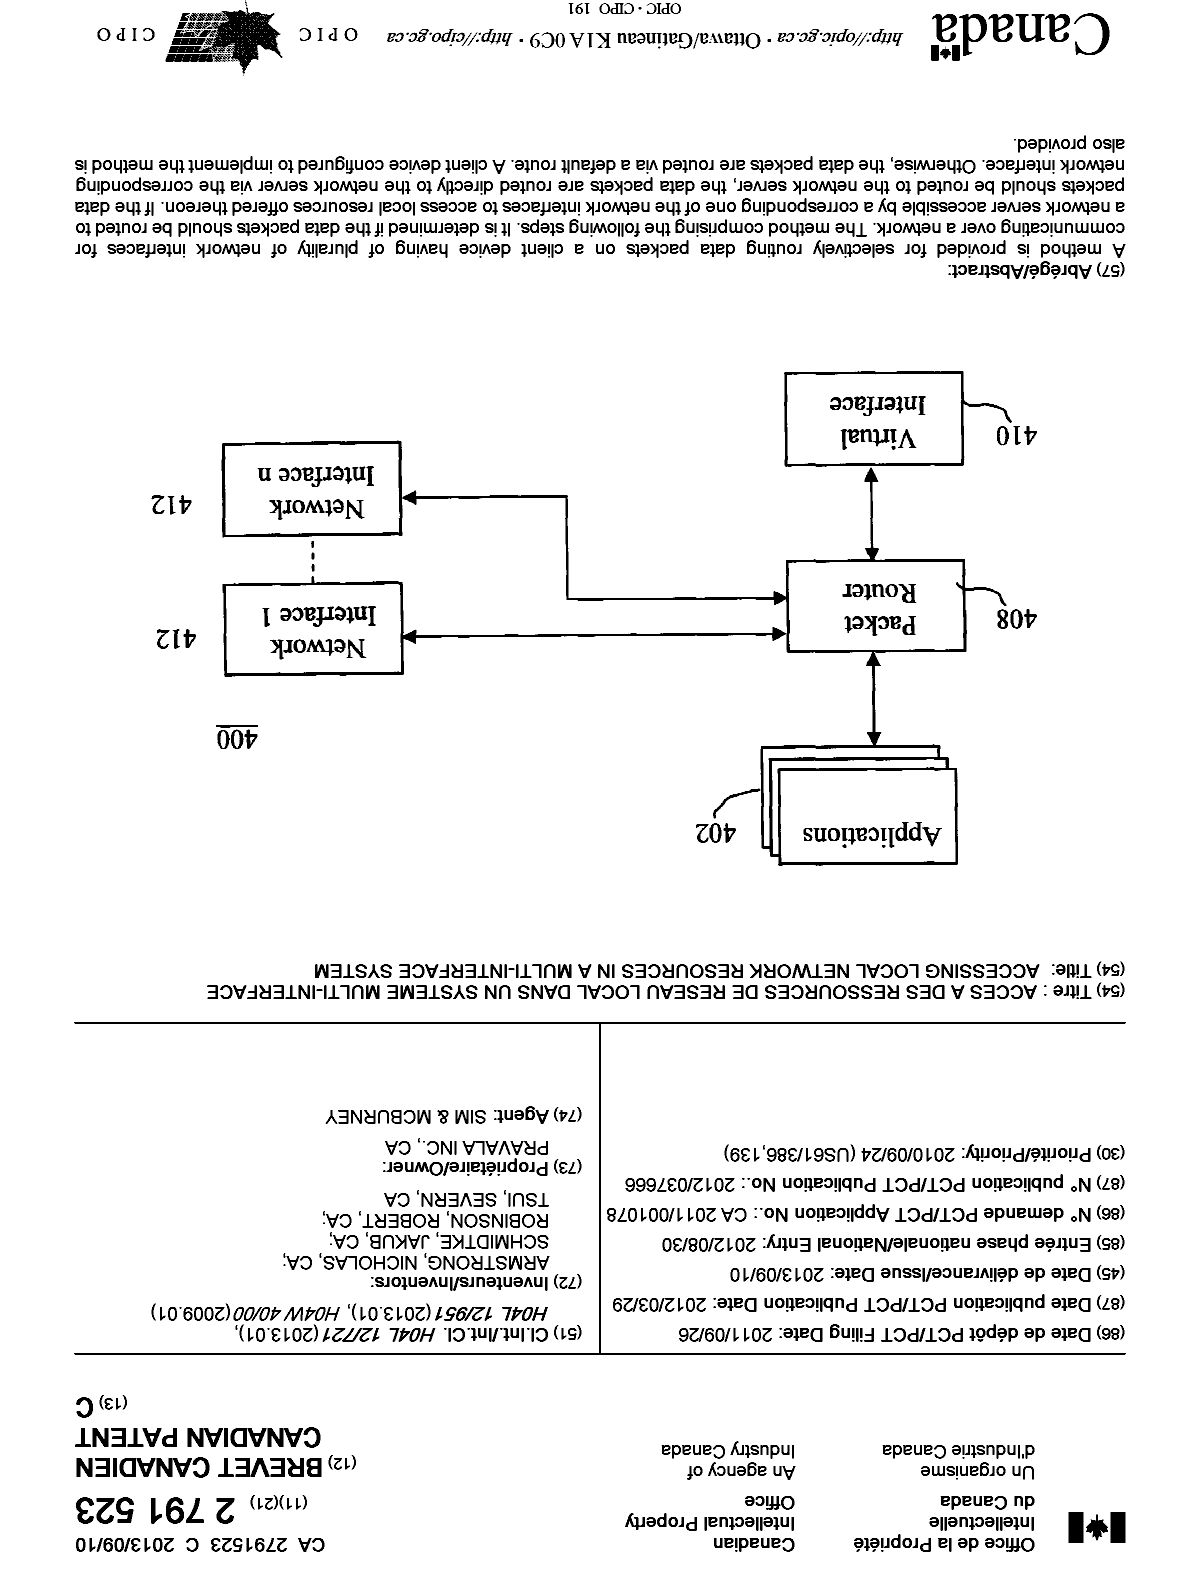 Document de brevet canadien 2791523. Page couverture 20121220. Image 1 de 1